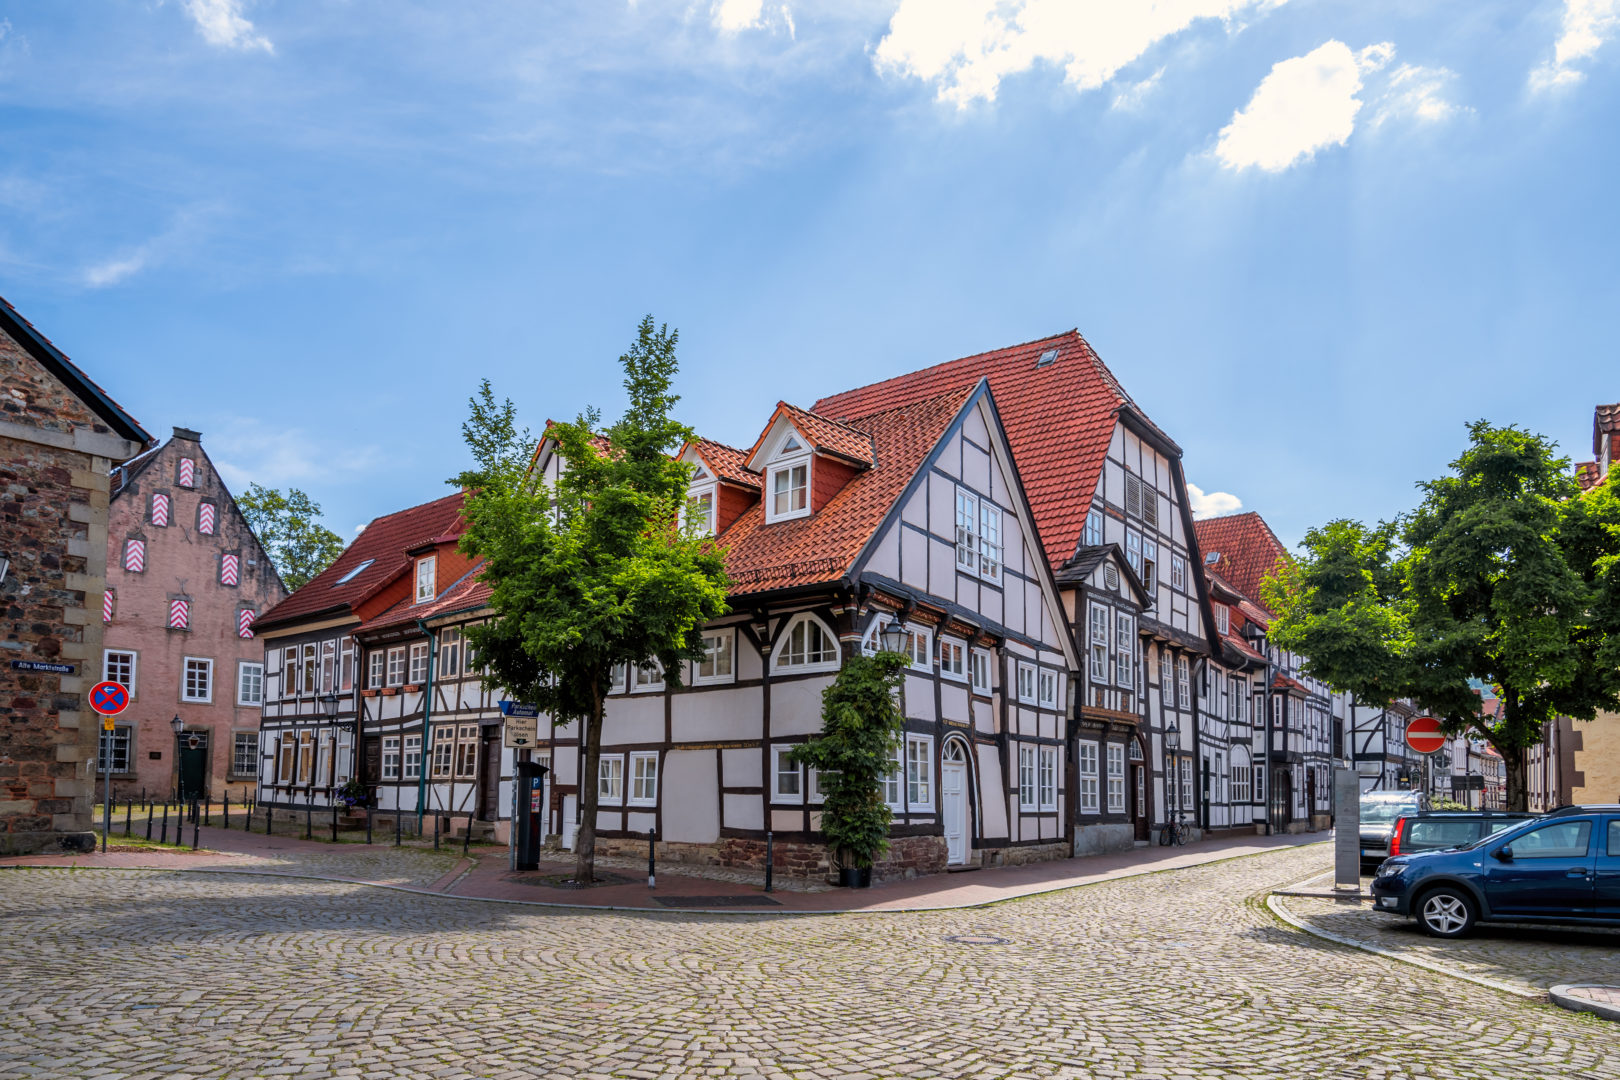 Maisons à colombage à Hameln, Allemagne